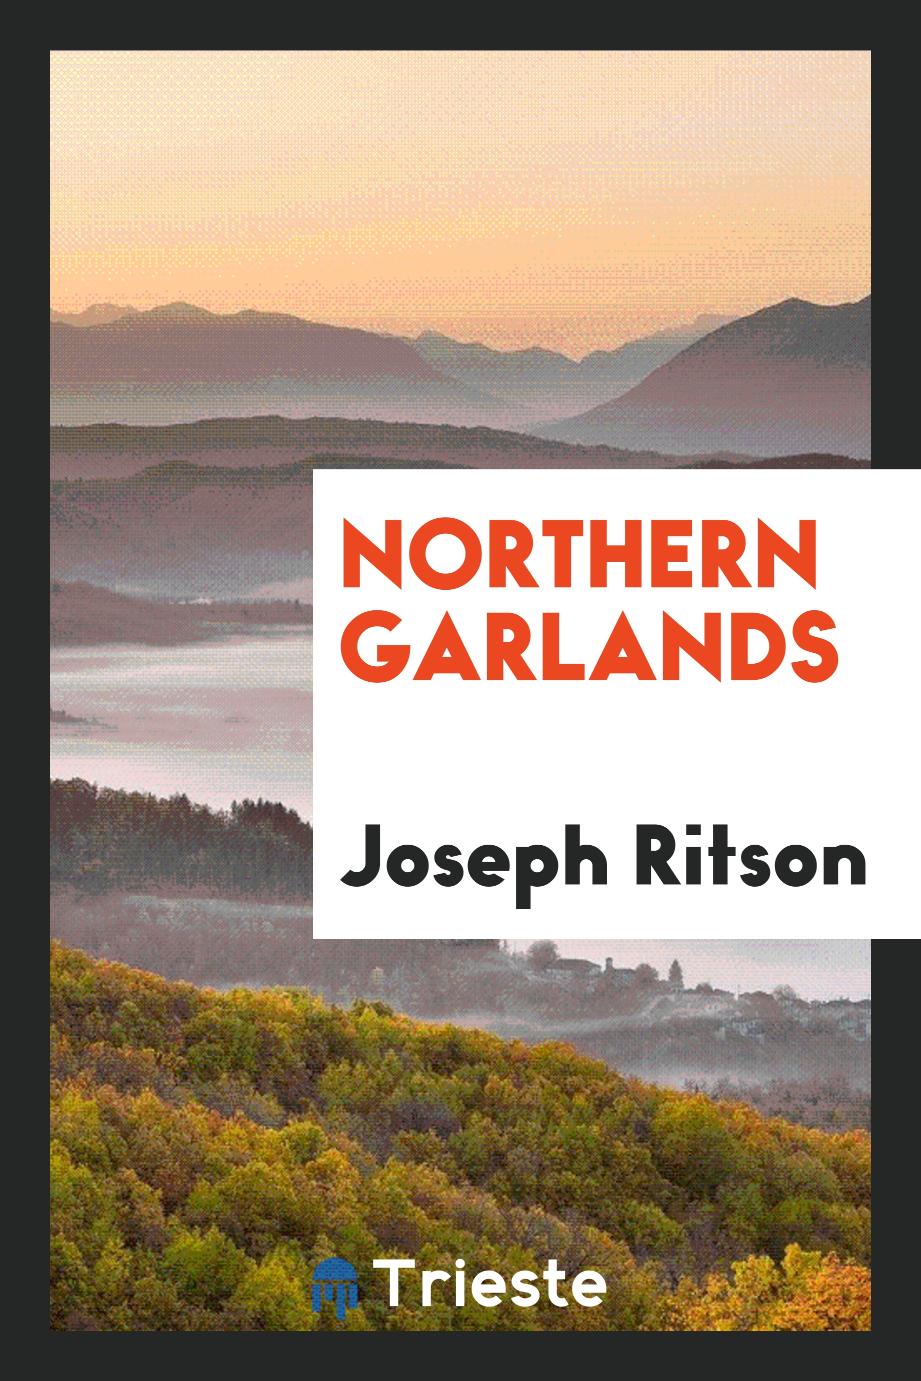 Northern garlands